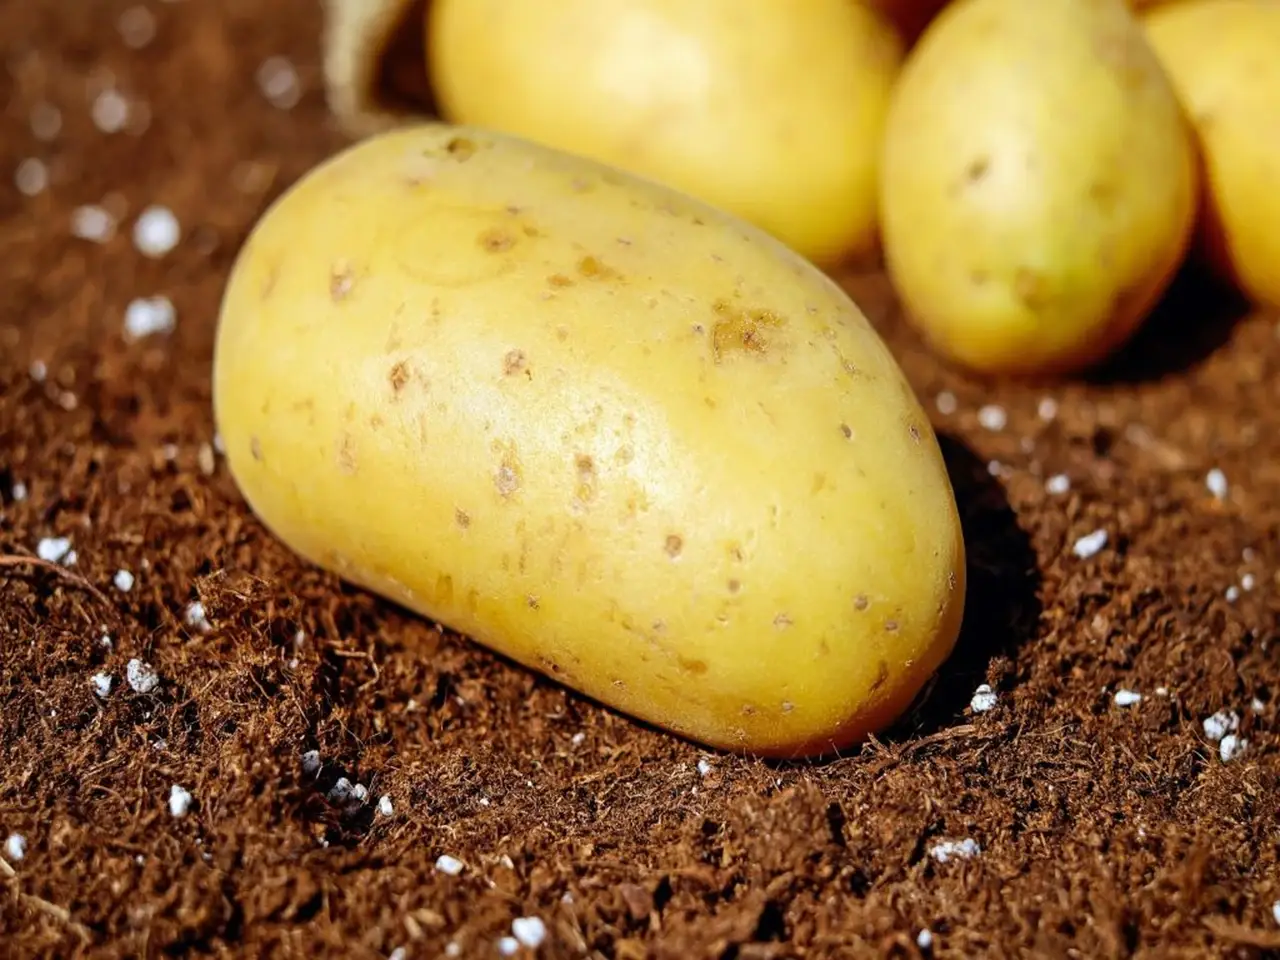 Potato or aloo